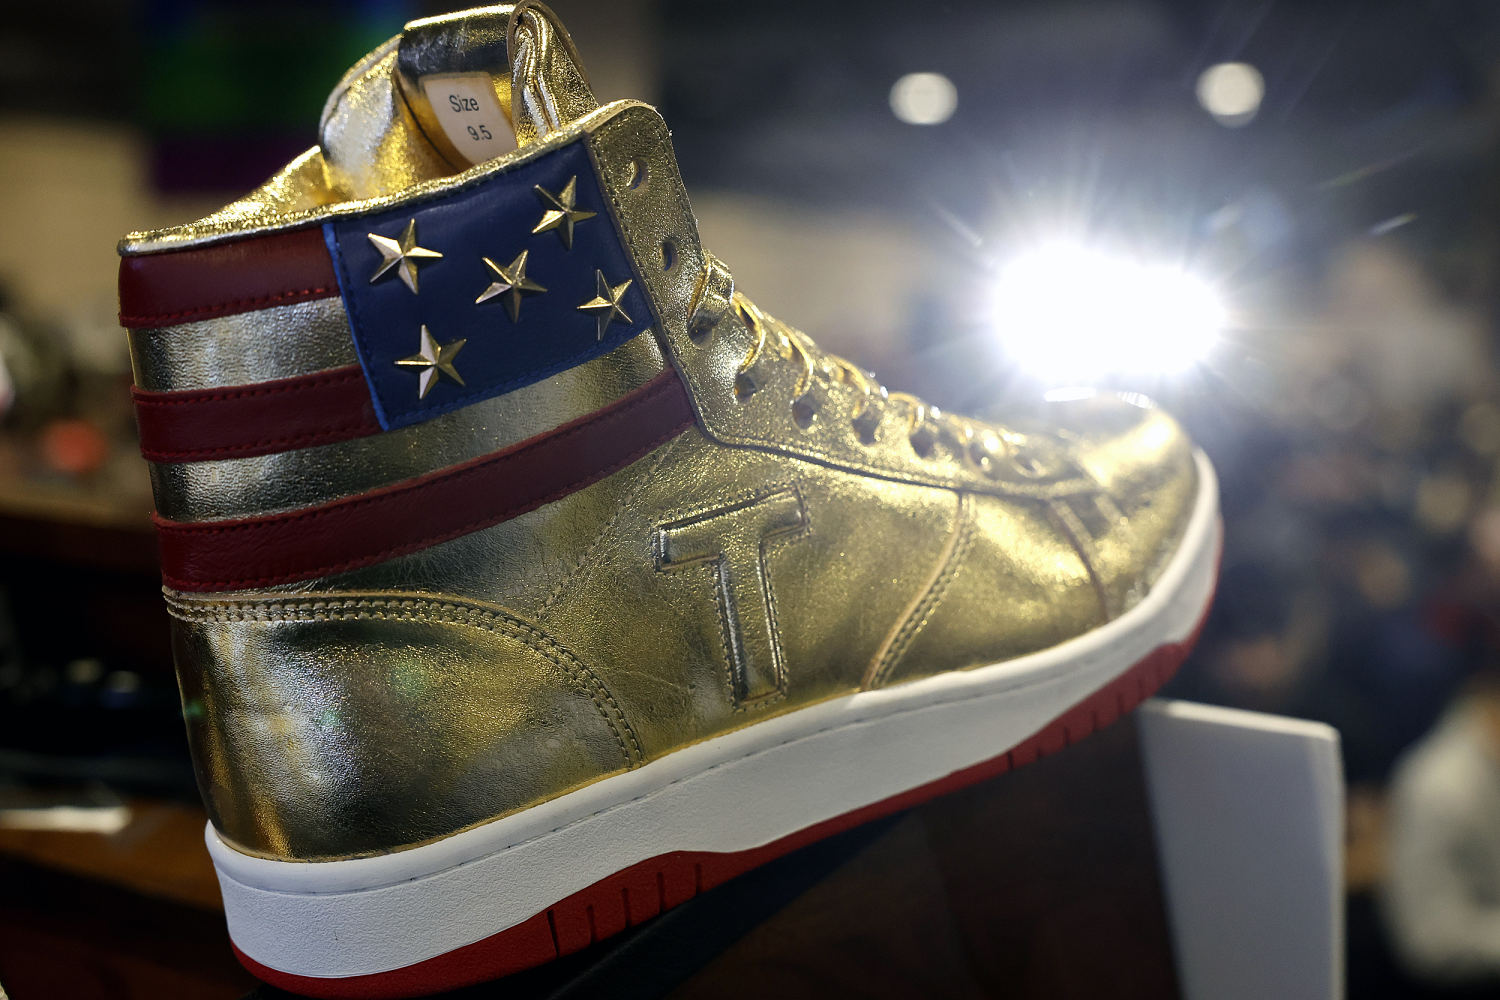 Trump sneaker knockoffs spark lawsuit over copyright infringement